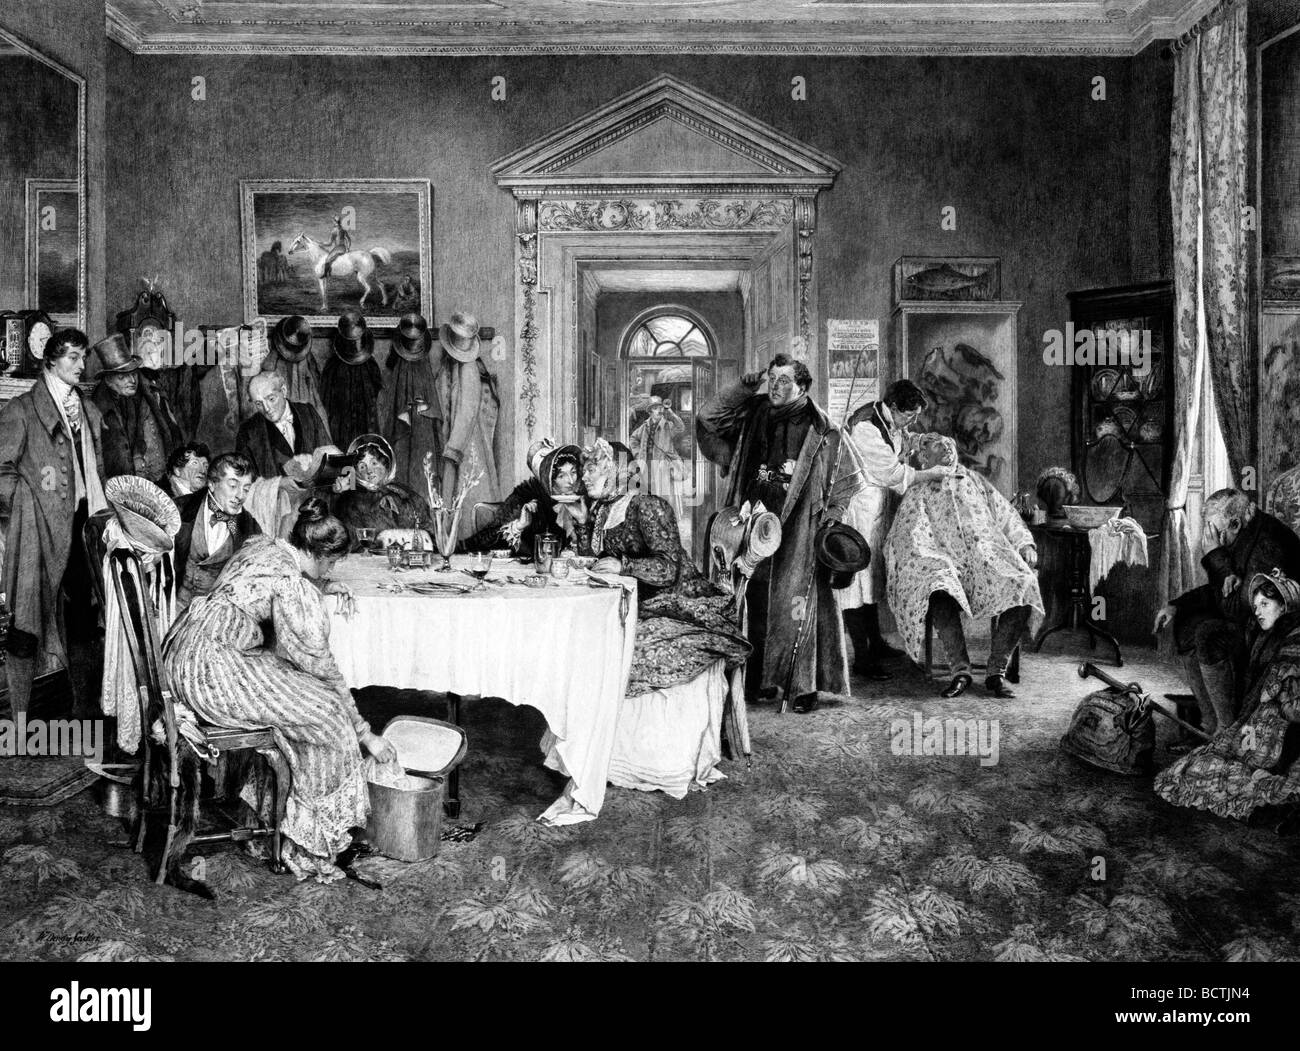 London nach York - Reisende in einer Weise zu stoppen; einige rund um Tisch, ein Mann wird rasiert und der Kutscher vor der Tür, ca. 1897 Stockfoto